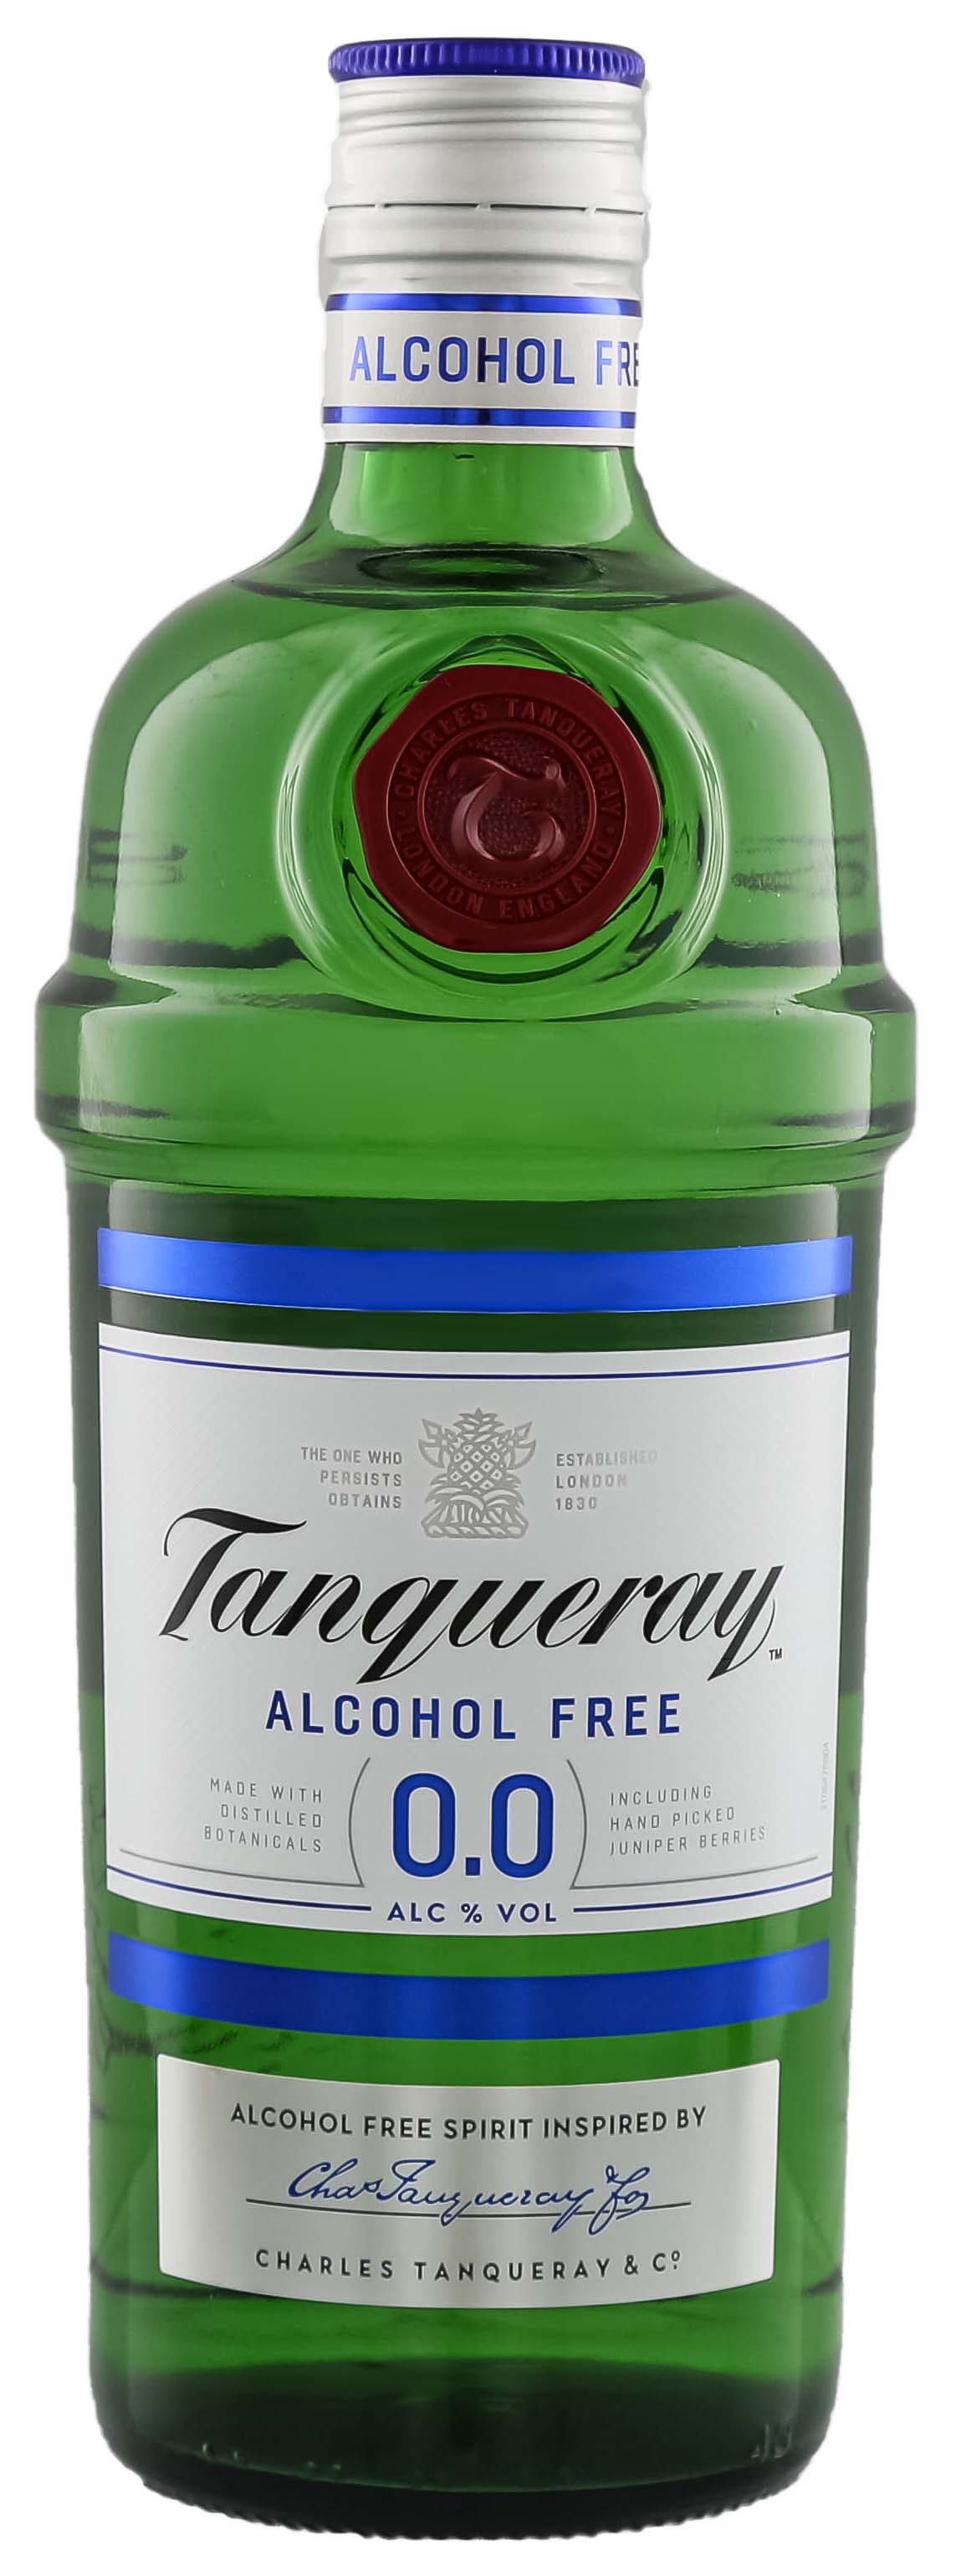 Tanqueray Alkoholfrei 0,0% jetzt kaufen im Drinkology Online Shop!